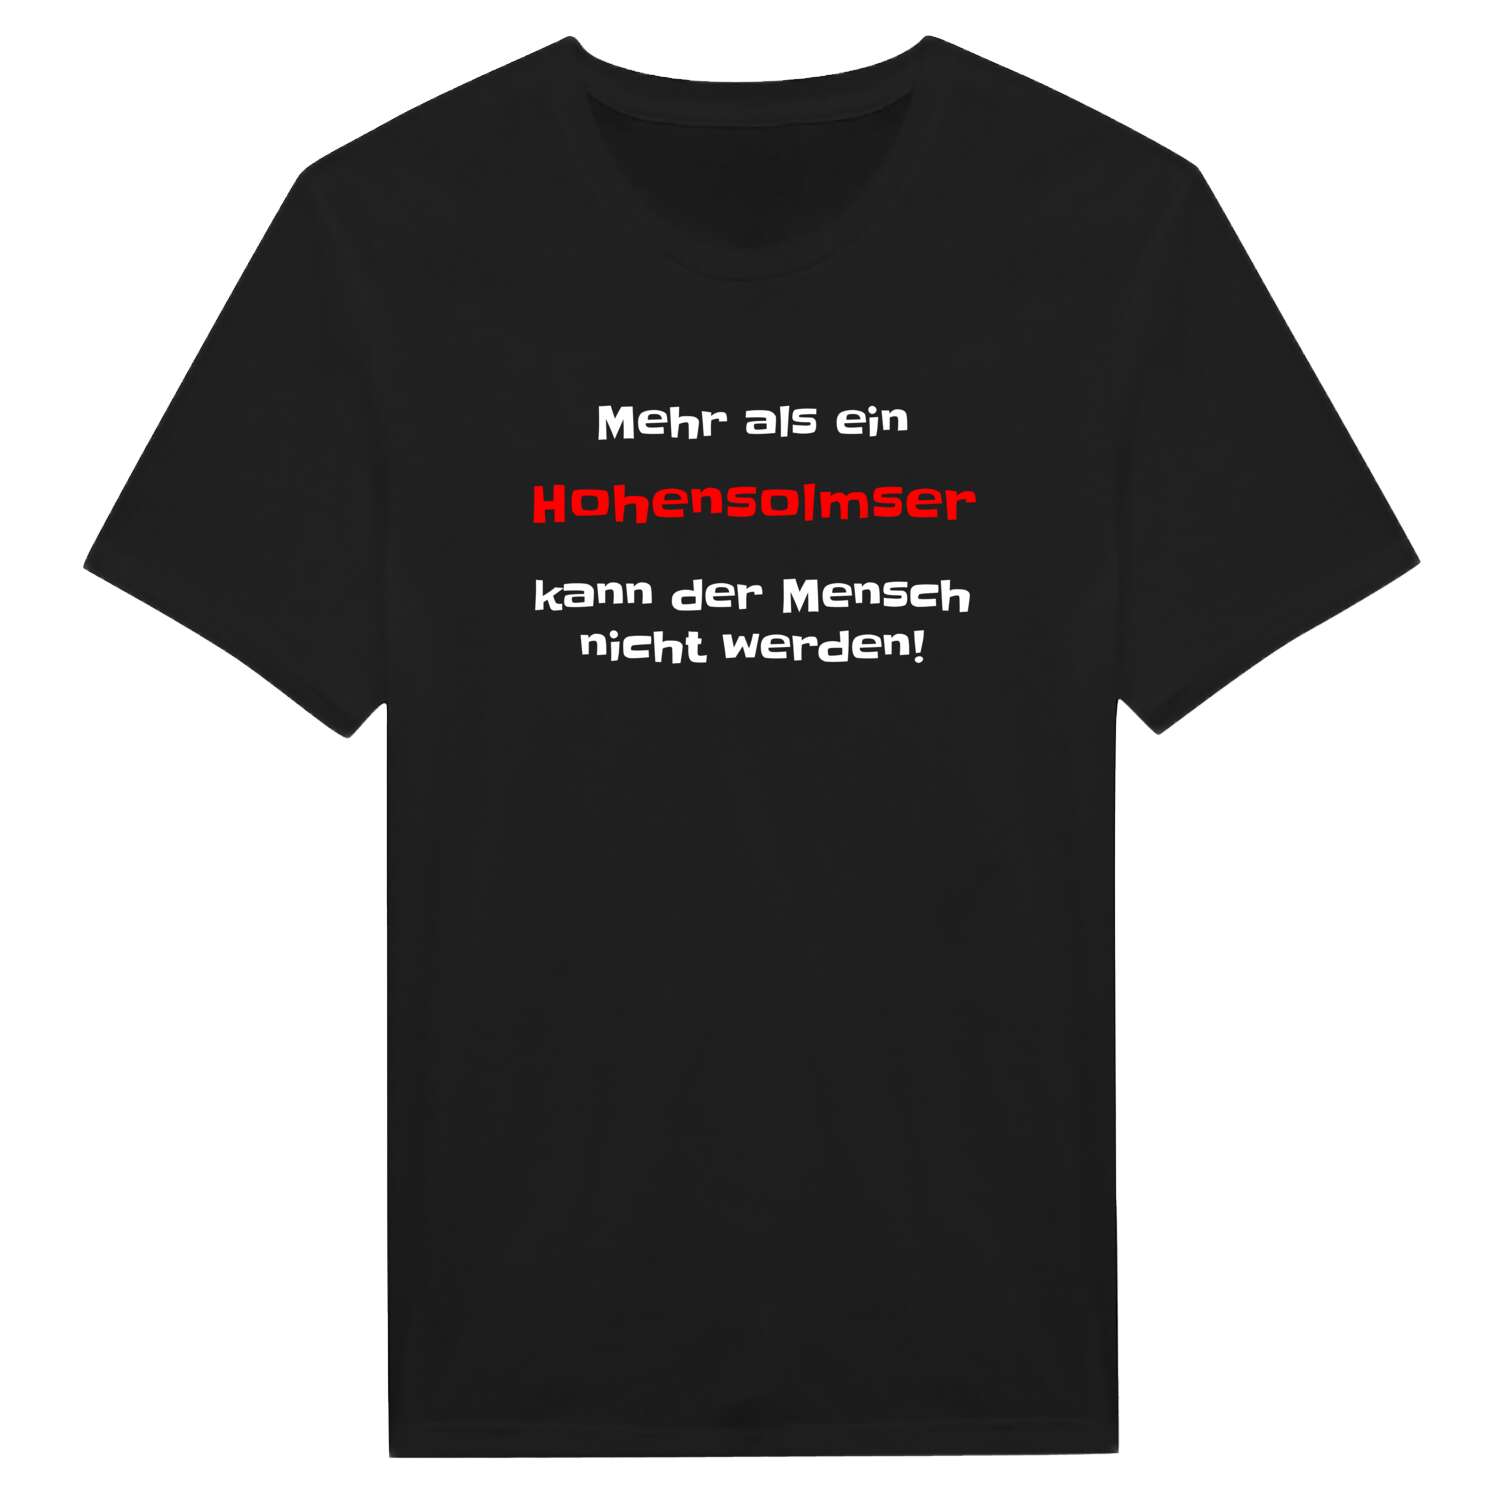 Hohensolms T-Shirt »Mehr als ein«